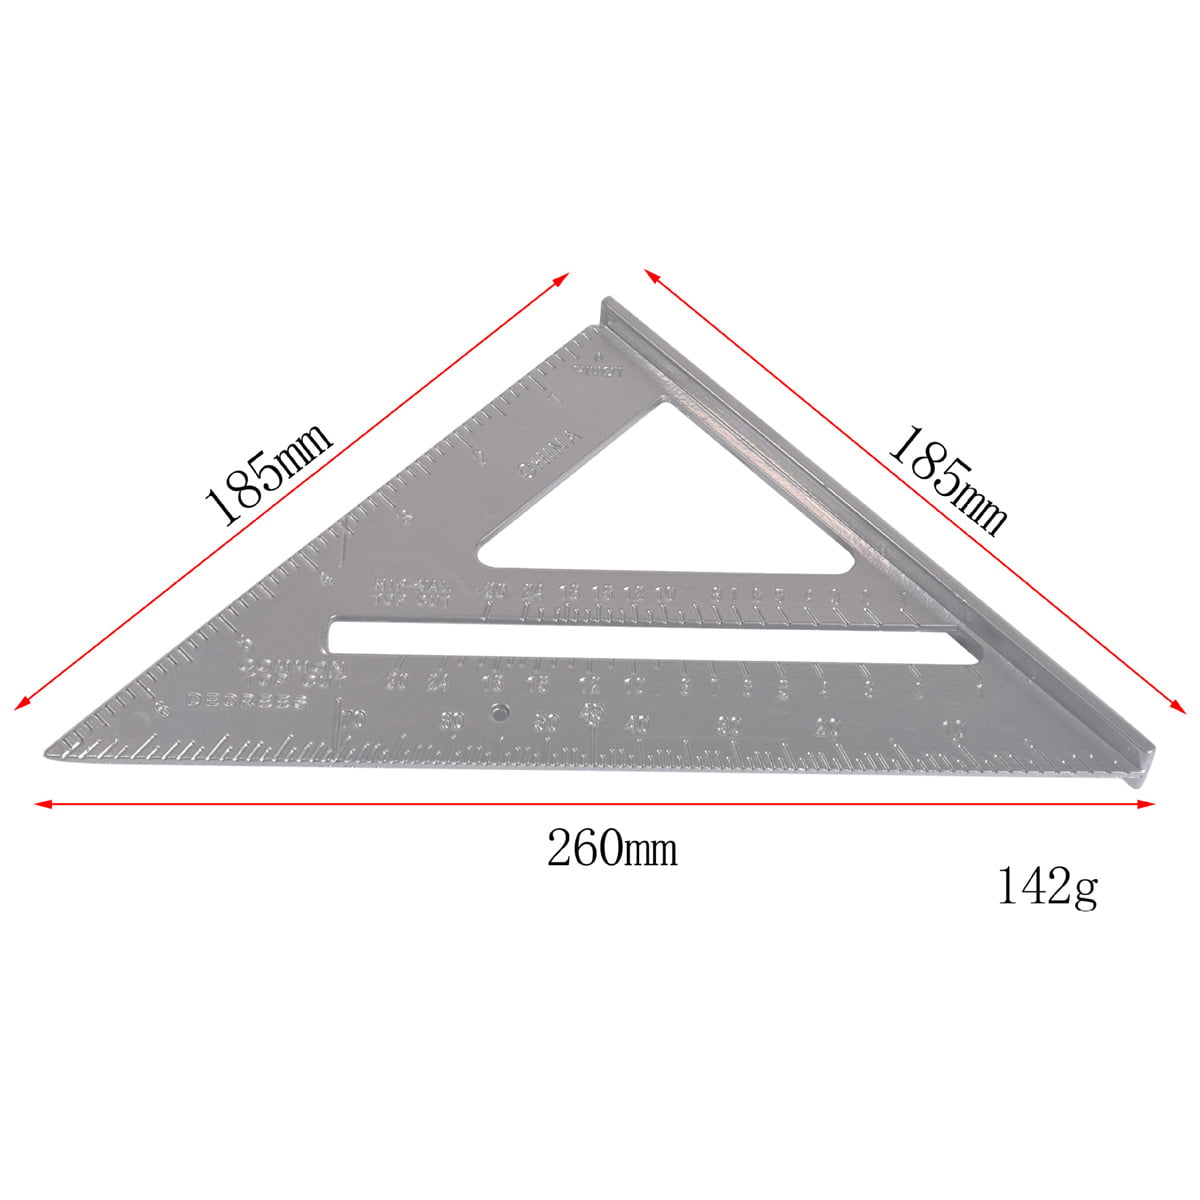 Square Design Tool Speed ​​7 inch 18 cm Imperial Aluminum Alloy Triangular Beam Angle Ruler 